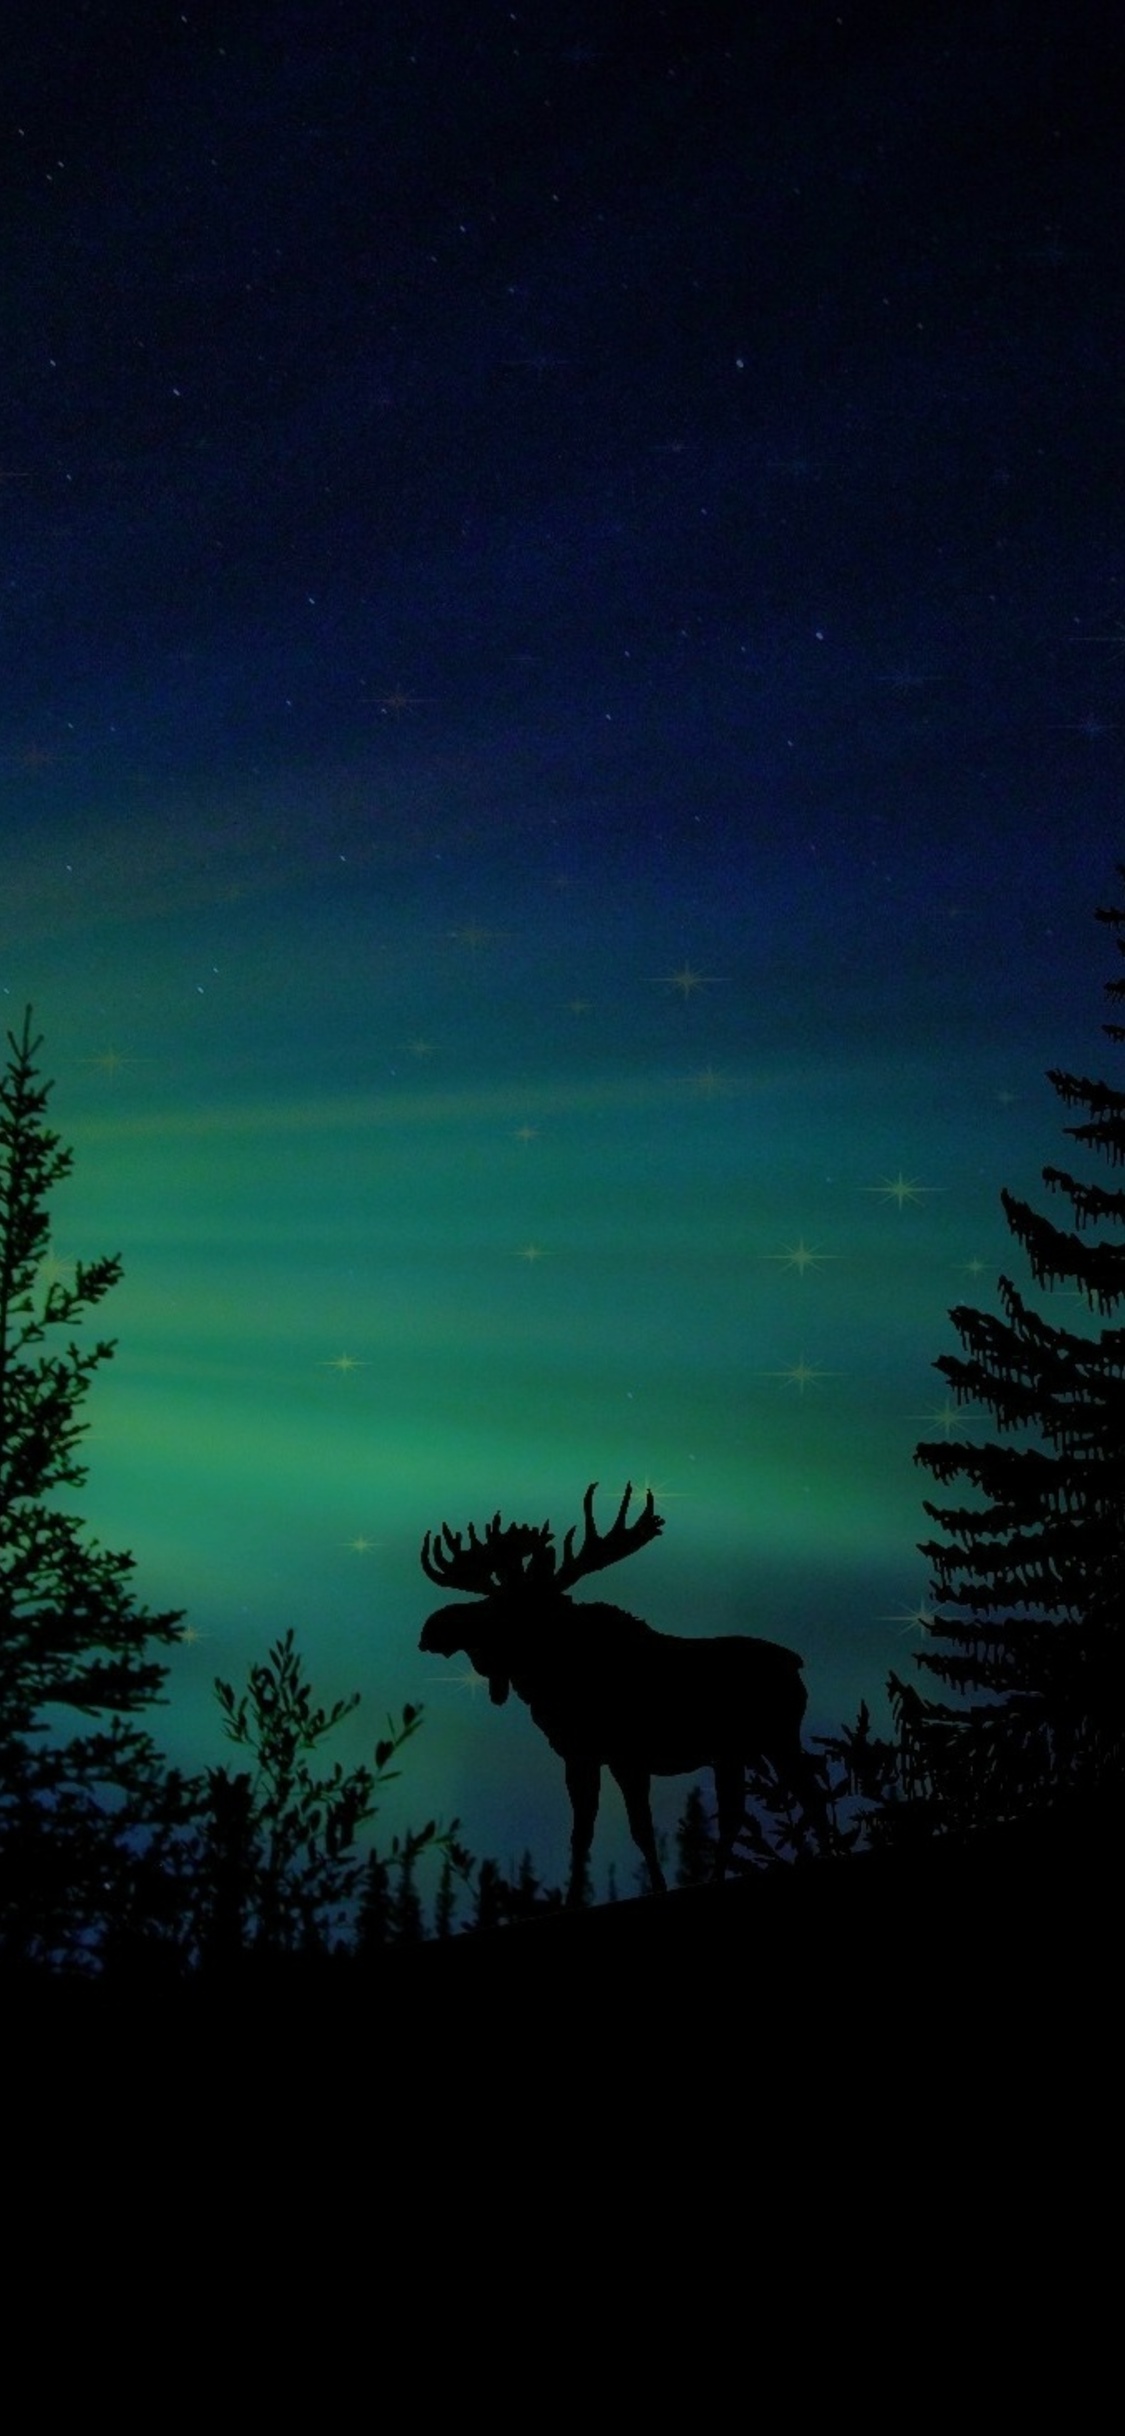 moose-forest-animal-dawn-silhouette-aurora-2u.jpg